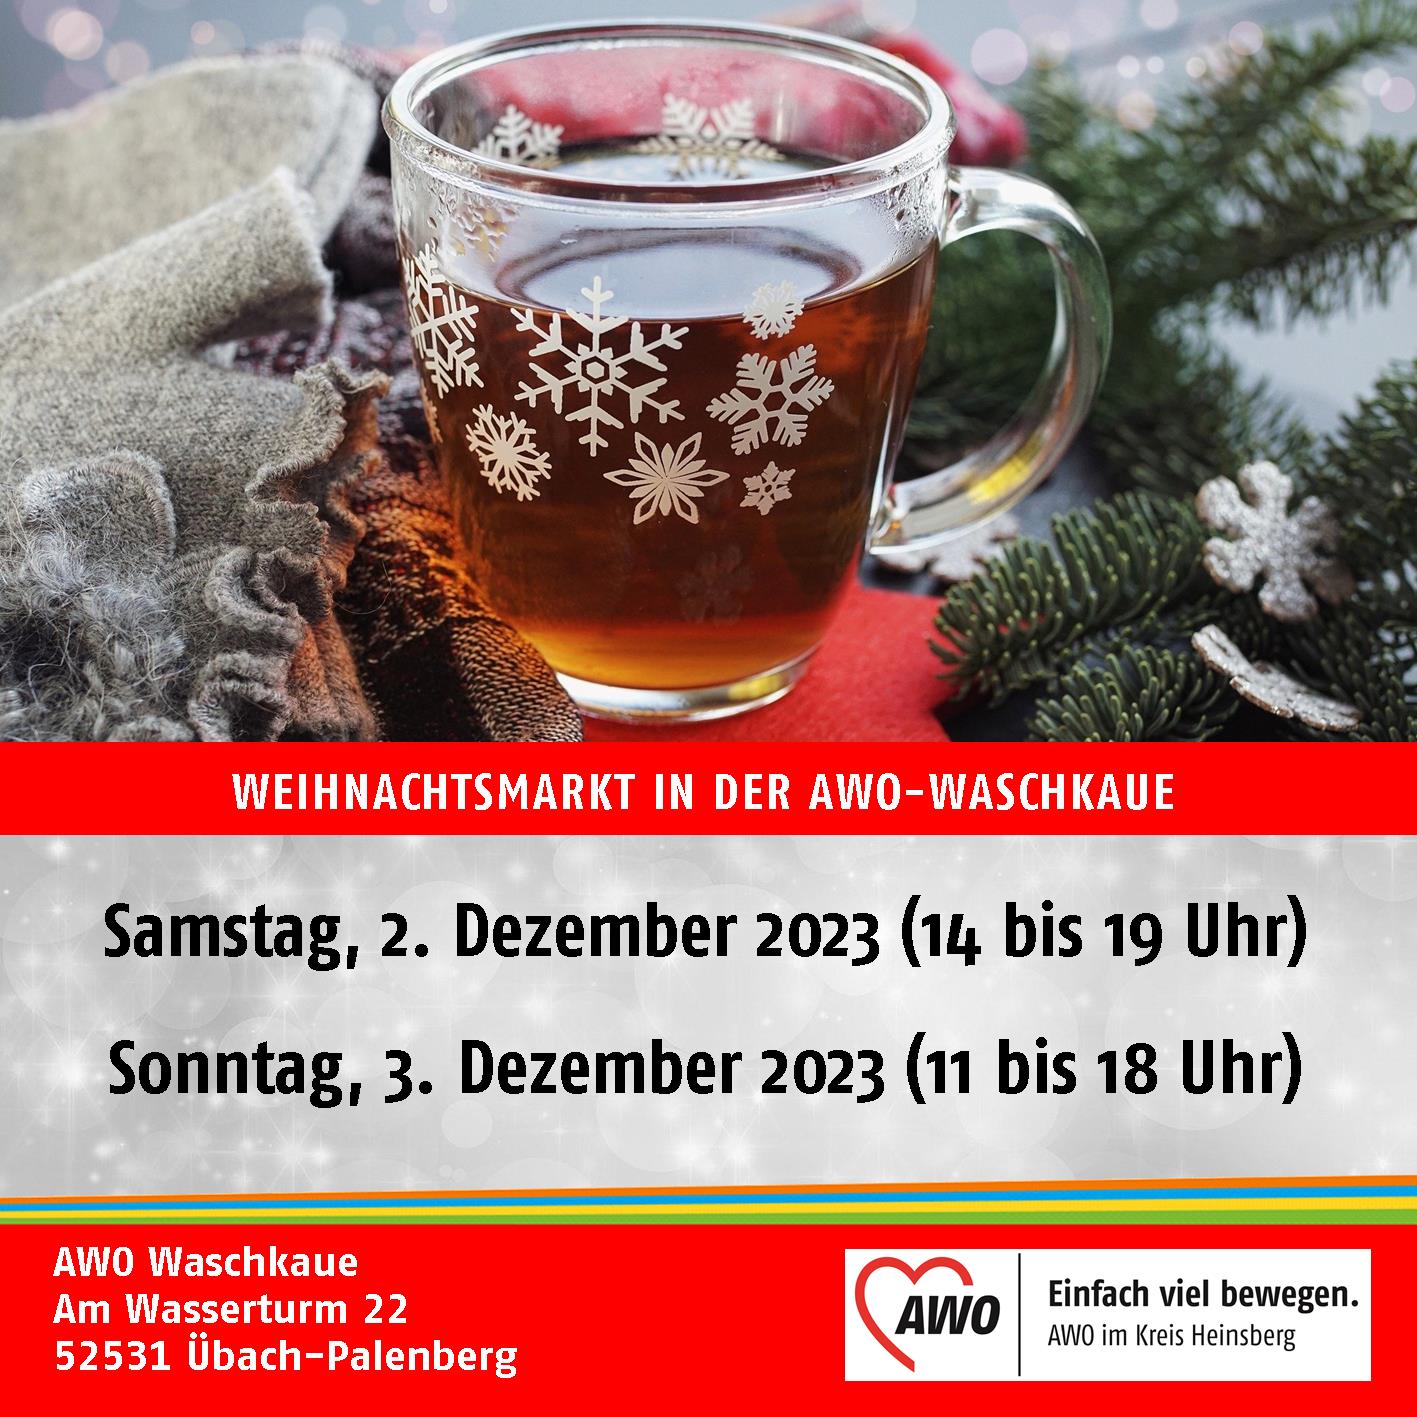 Weihnachtsmarkt in der AWO-Waschkaue Übach-Palenberg (2. und 3. Dezember 2023) 1